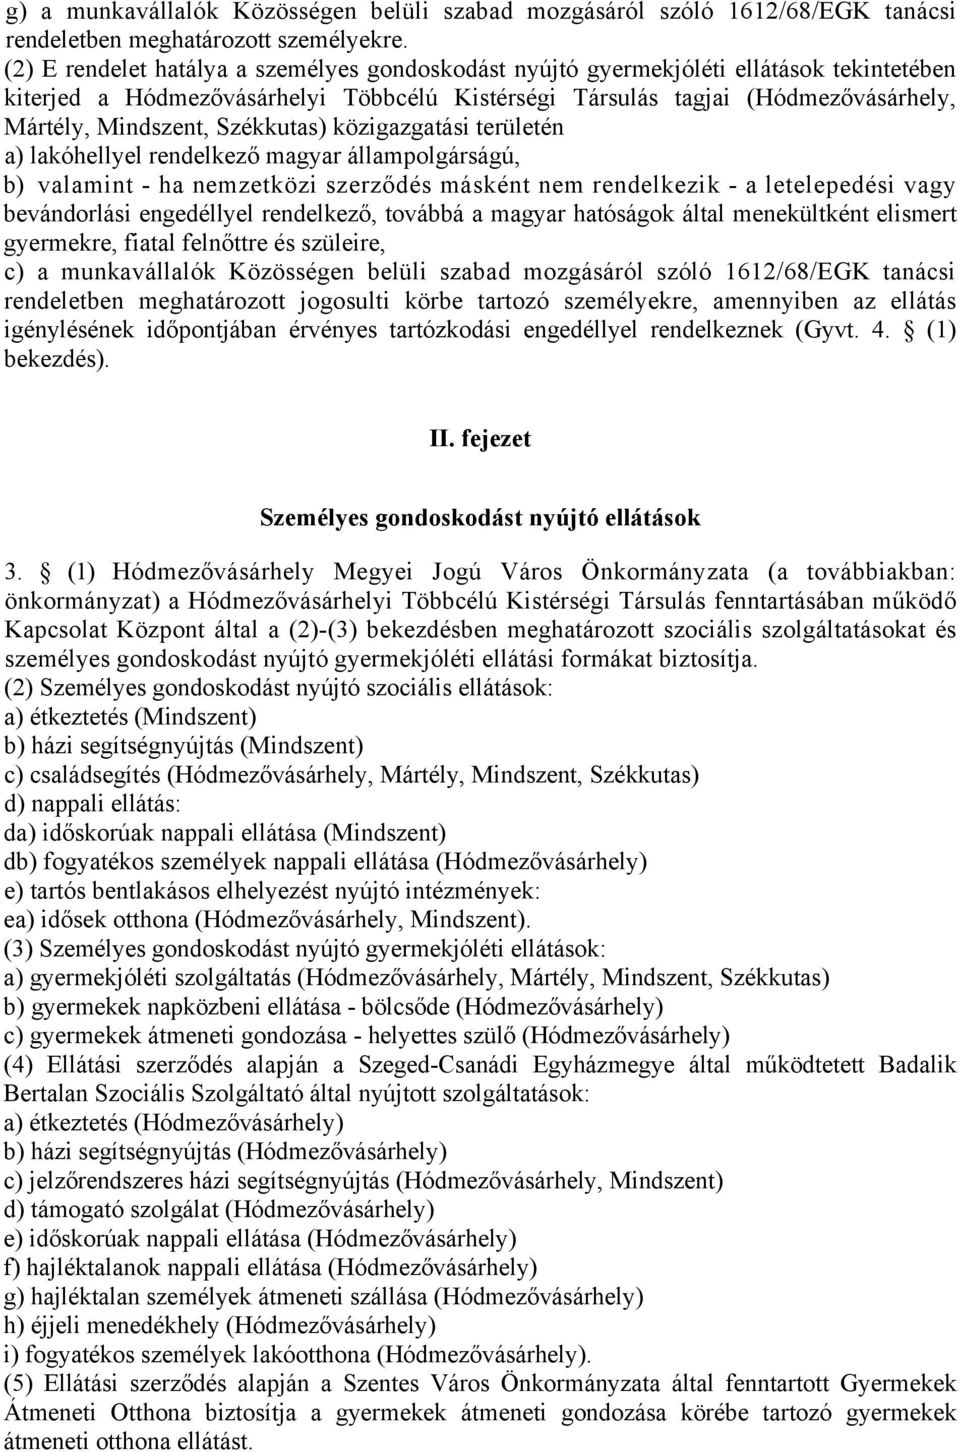 Székkutas) közigazgatási területén a) lakóhellyel rendelkező magyar állampolgárságú, b) valamint - ha nemzetközi szerződés másként nem rendelkezik - a letelepedési vagy bevándorlási engedéllyel